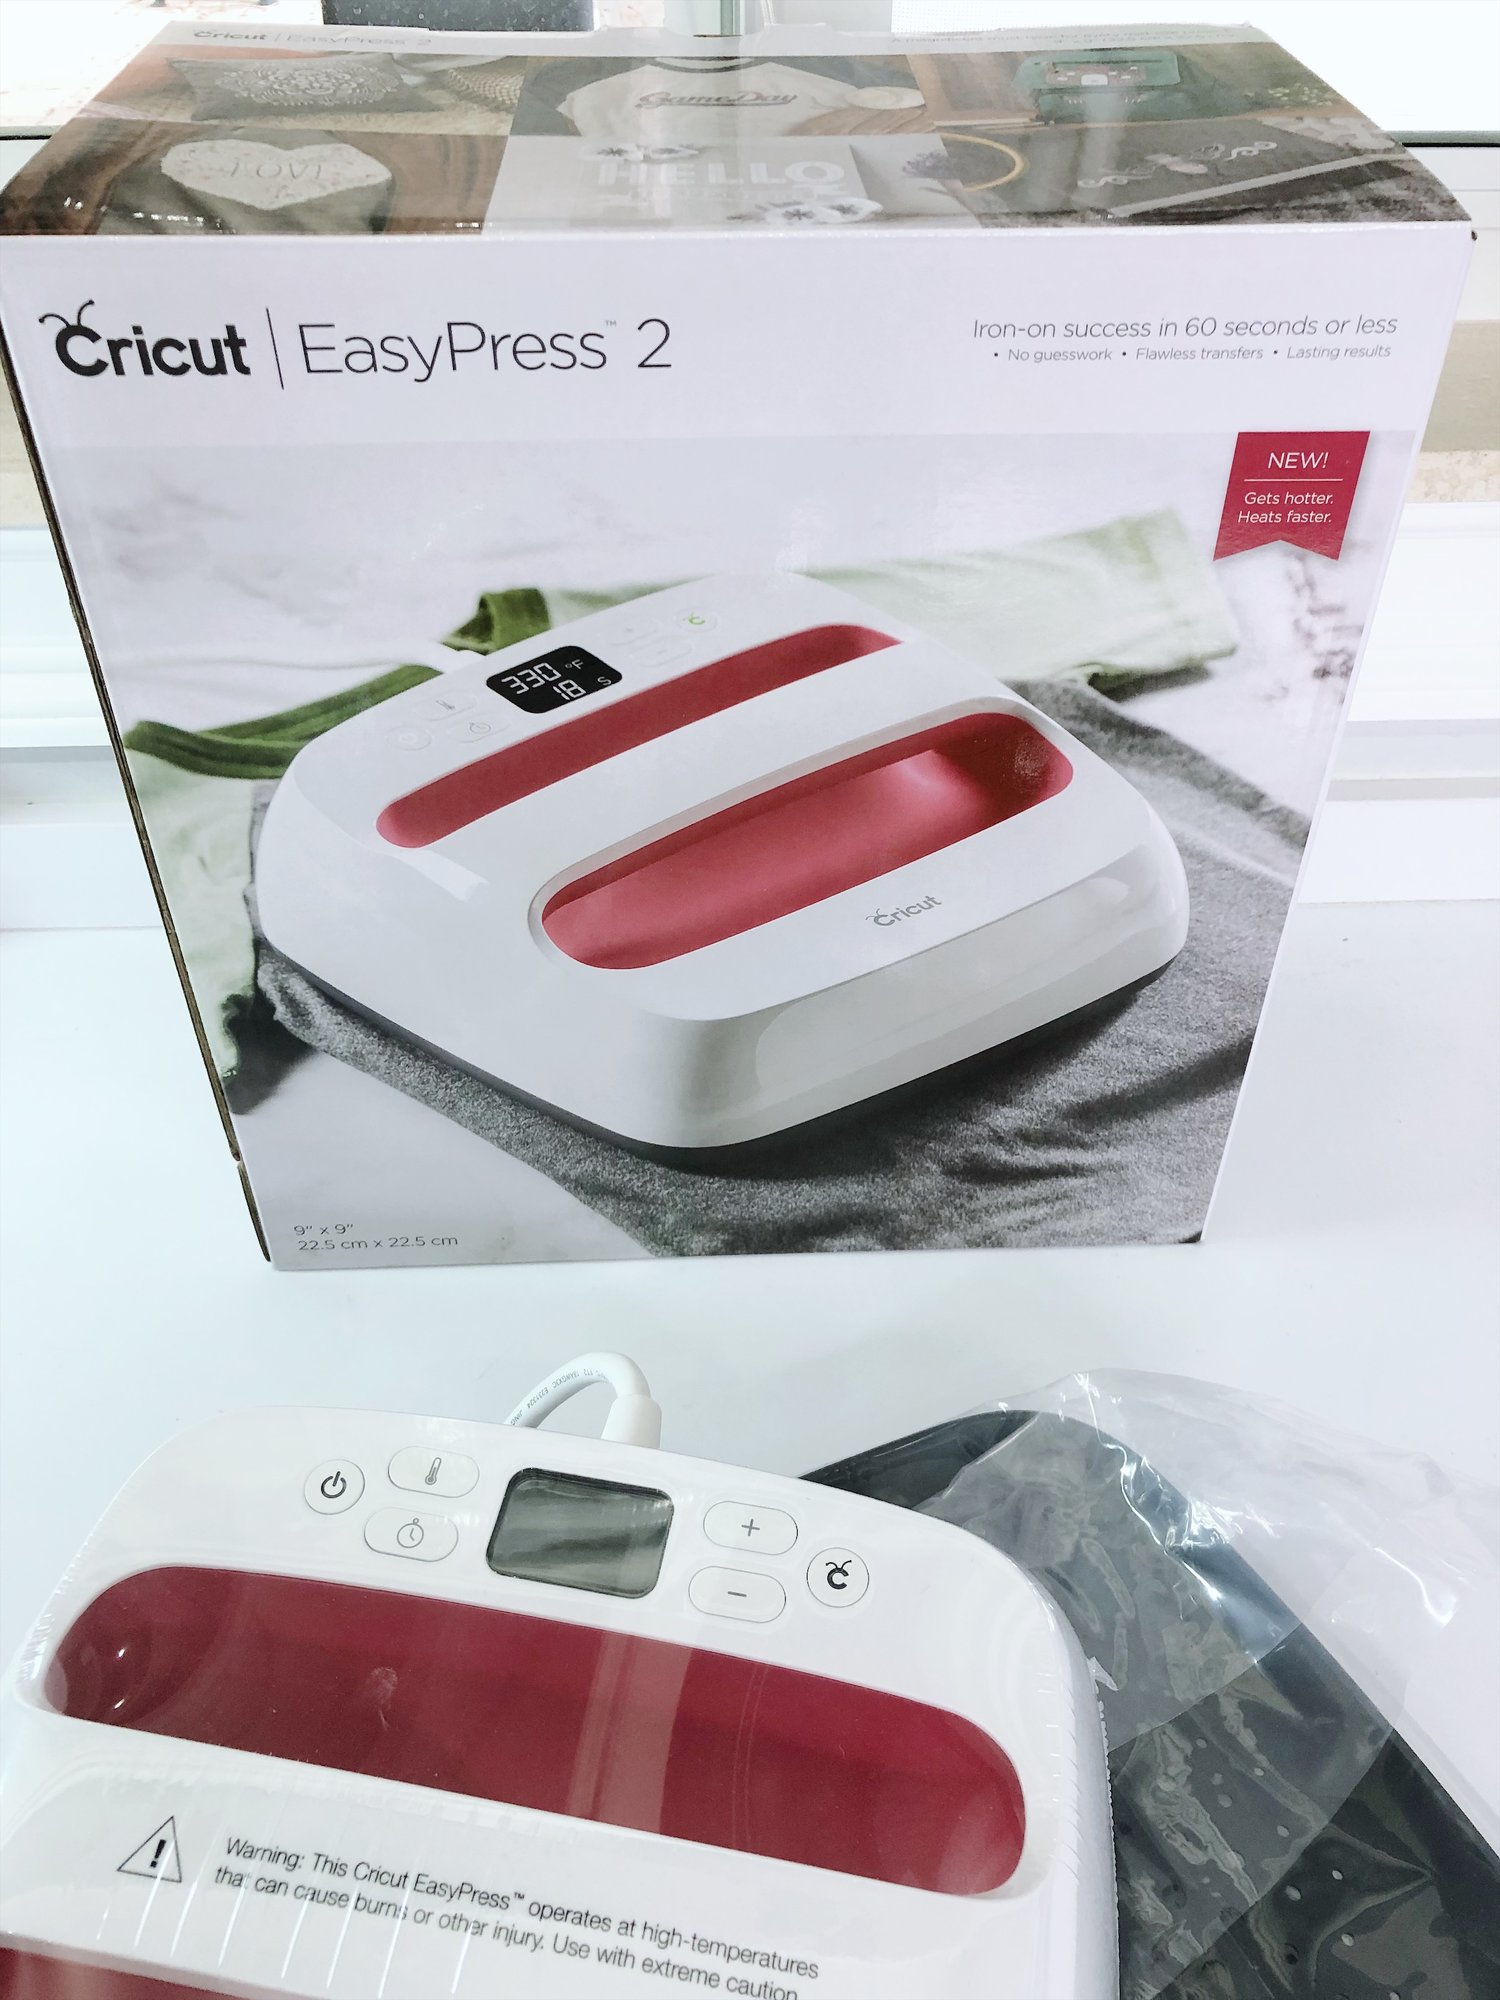 Cricut EasyPress 2 